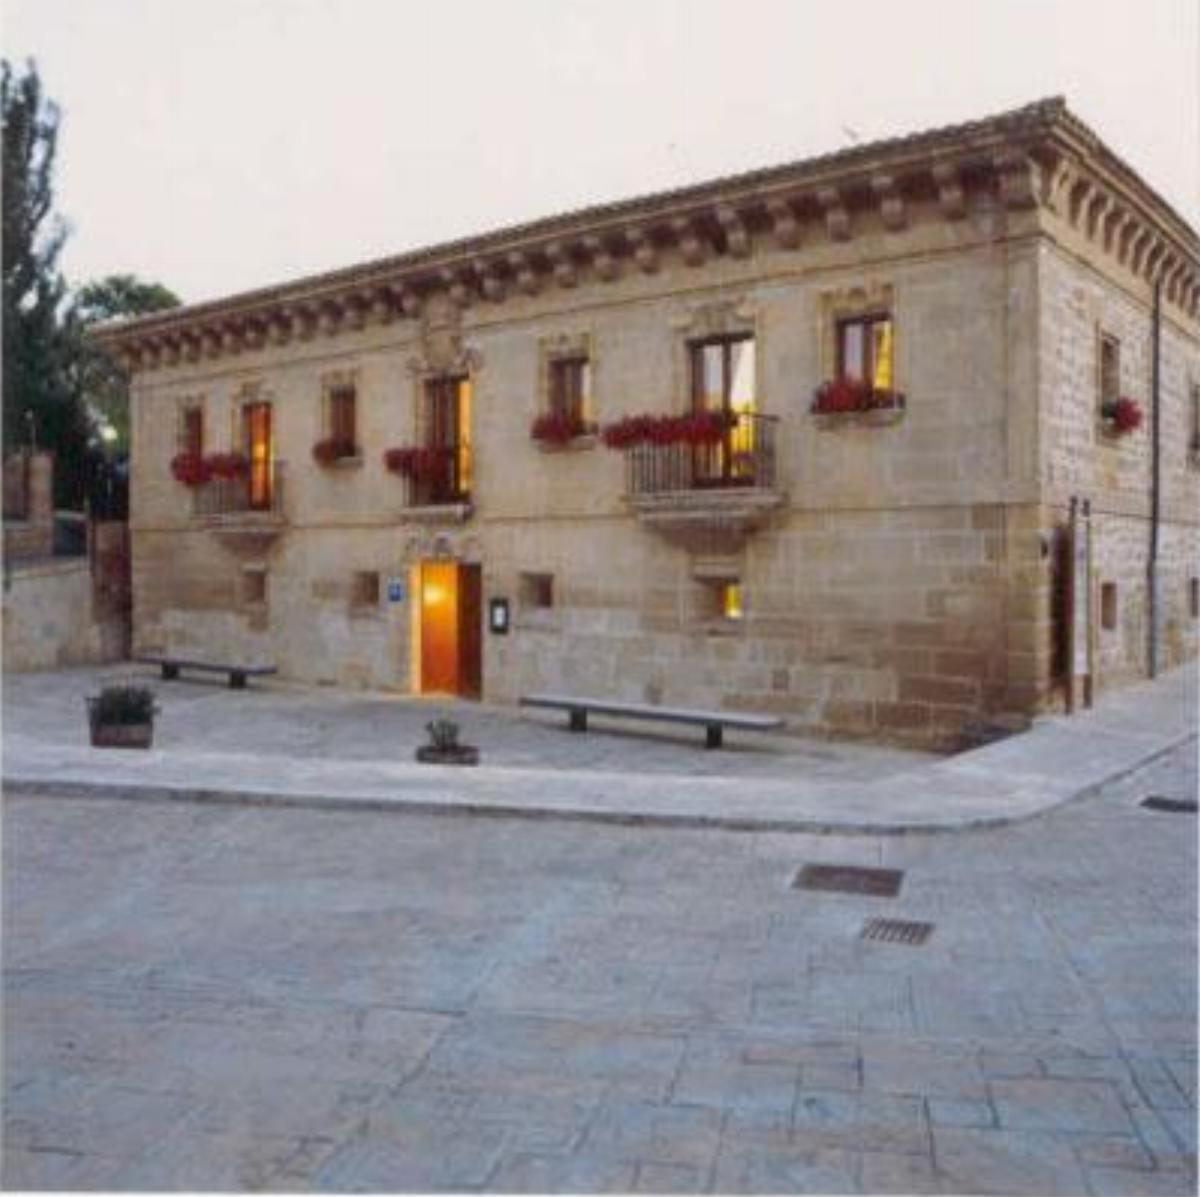 Hotel Palacio de Samaniego